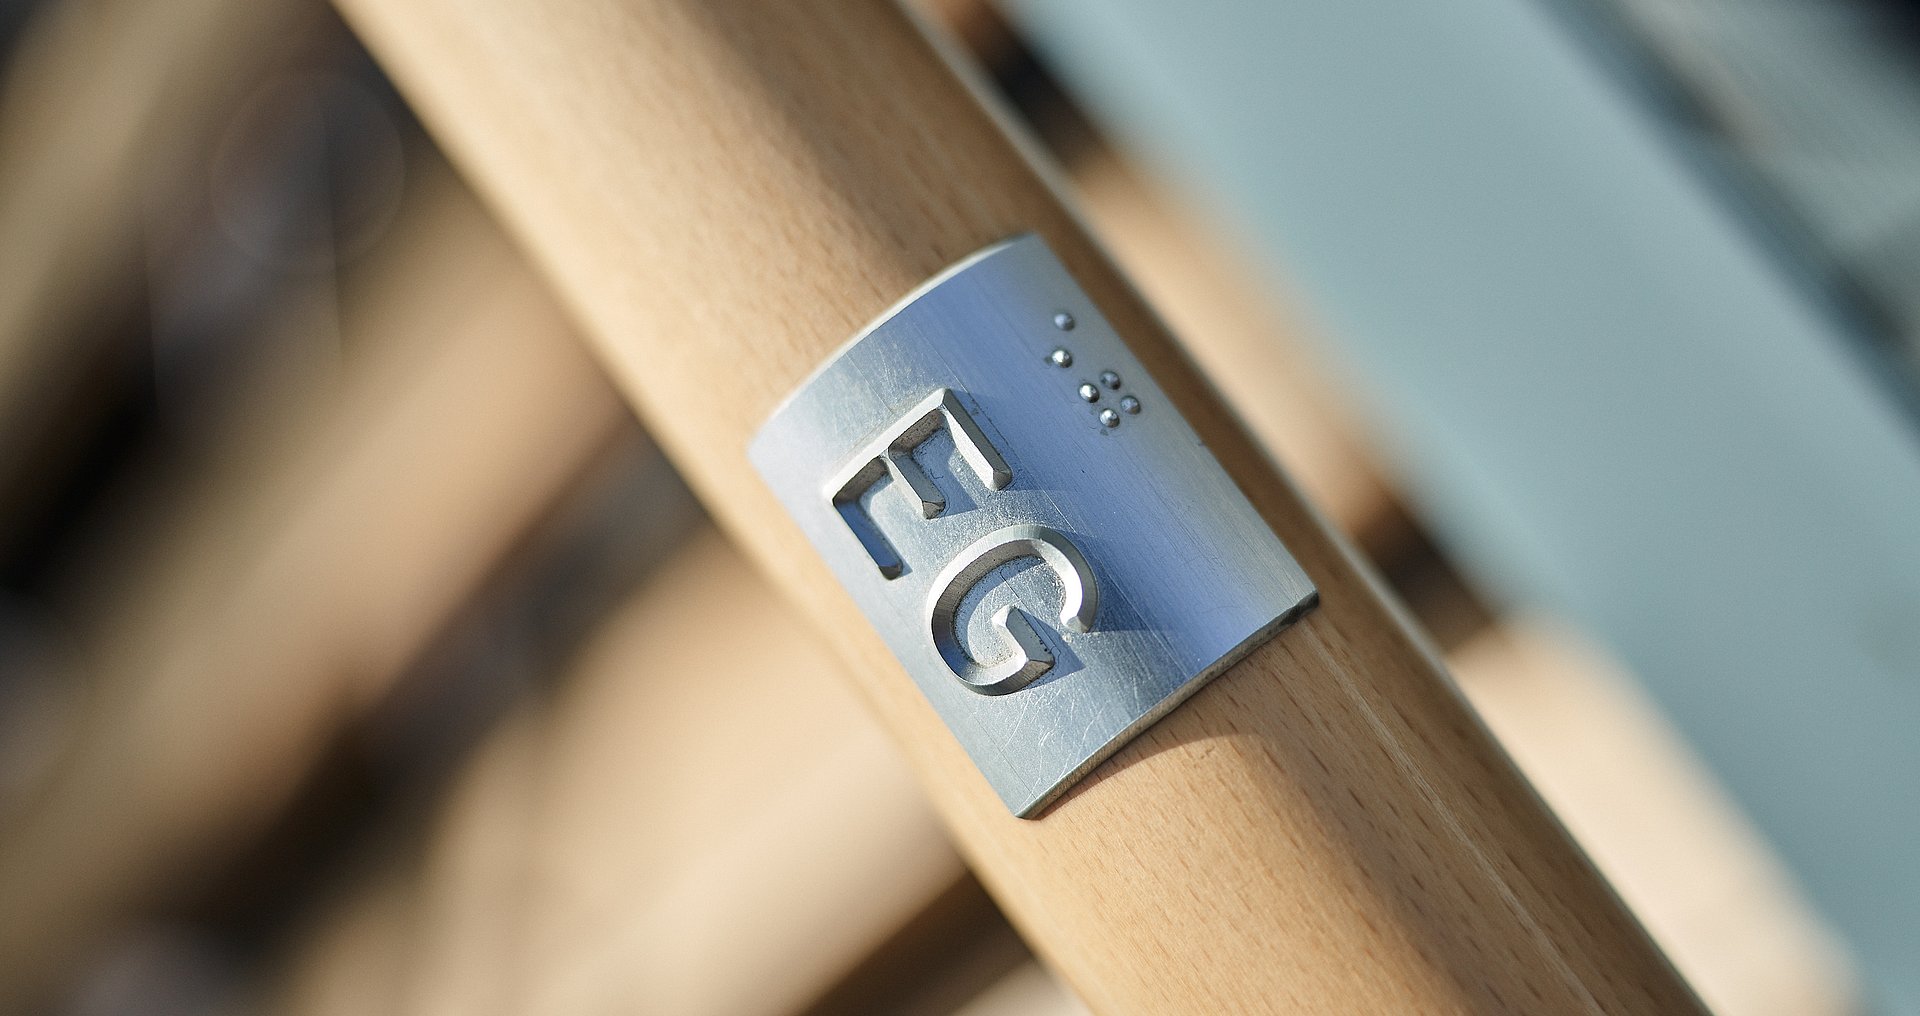 Nahaufnahme Holzgeländer mit Plakette auf der EG in Brailleschrift steht.